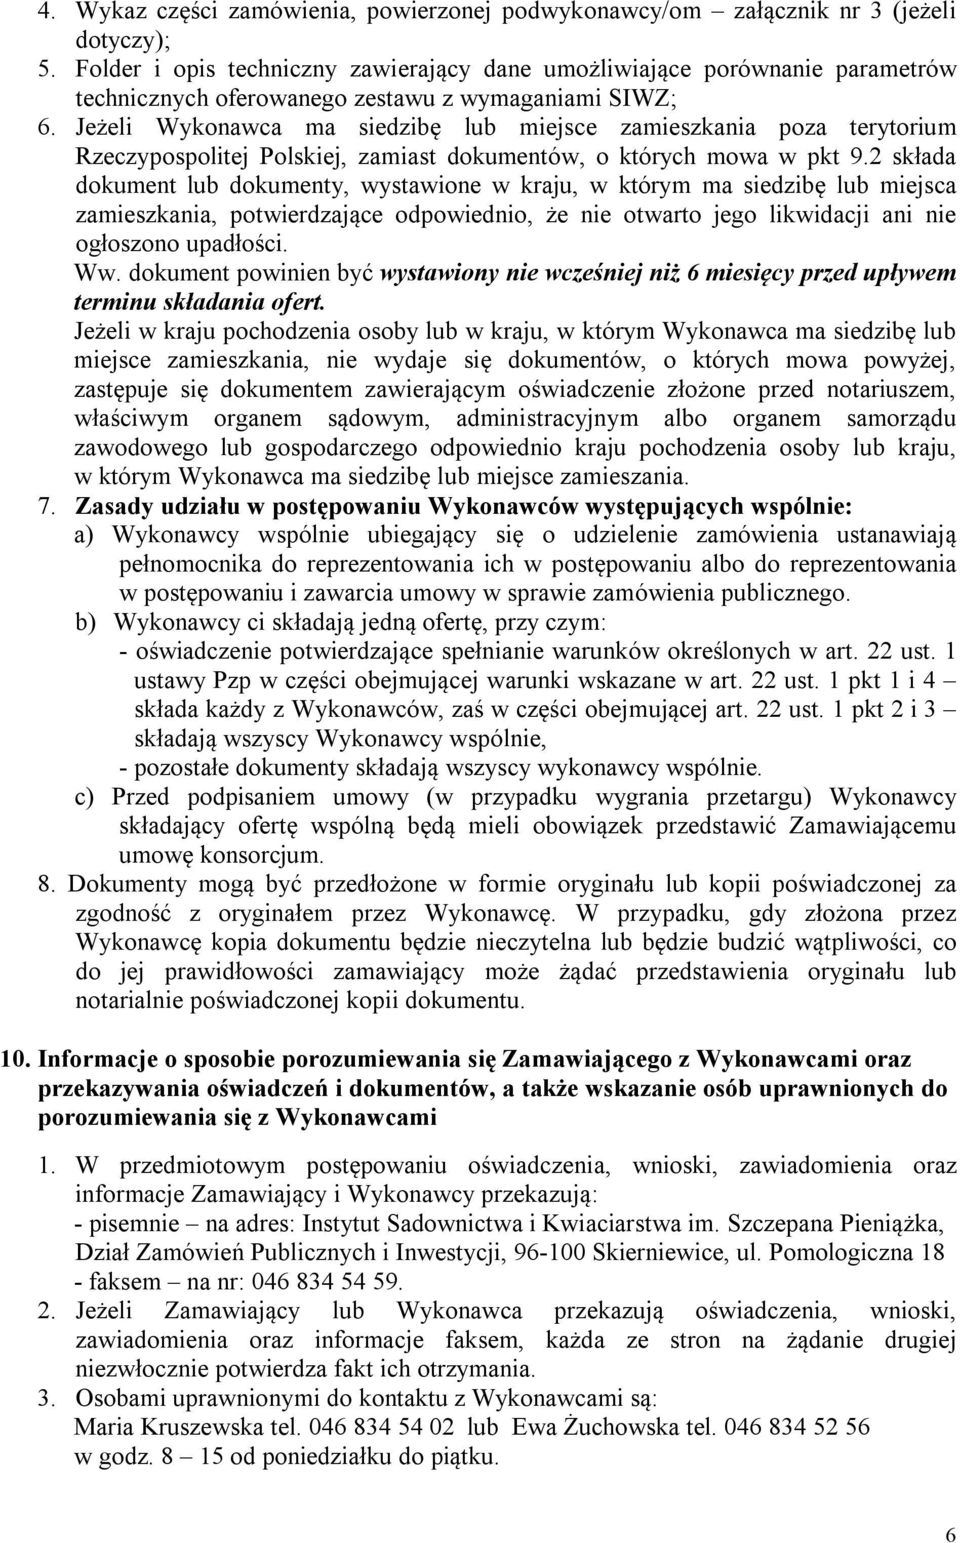 Jeżeli Wykonawca ma siedzibę lub miejsce zamieszkania poza terytorium Rzeczypospolitej Polskiej, zamiast dokumentów, o których mowa w pkt 9.